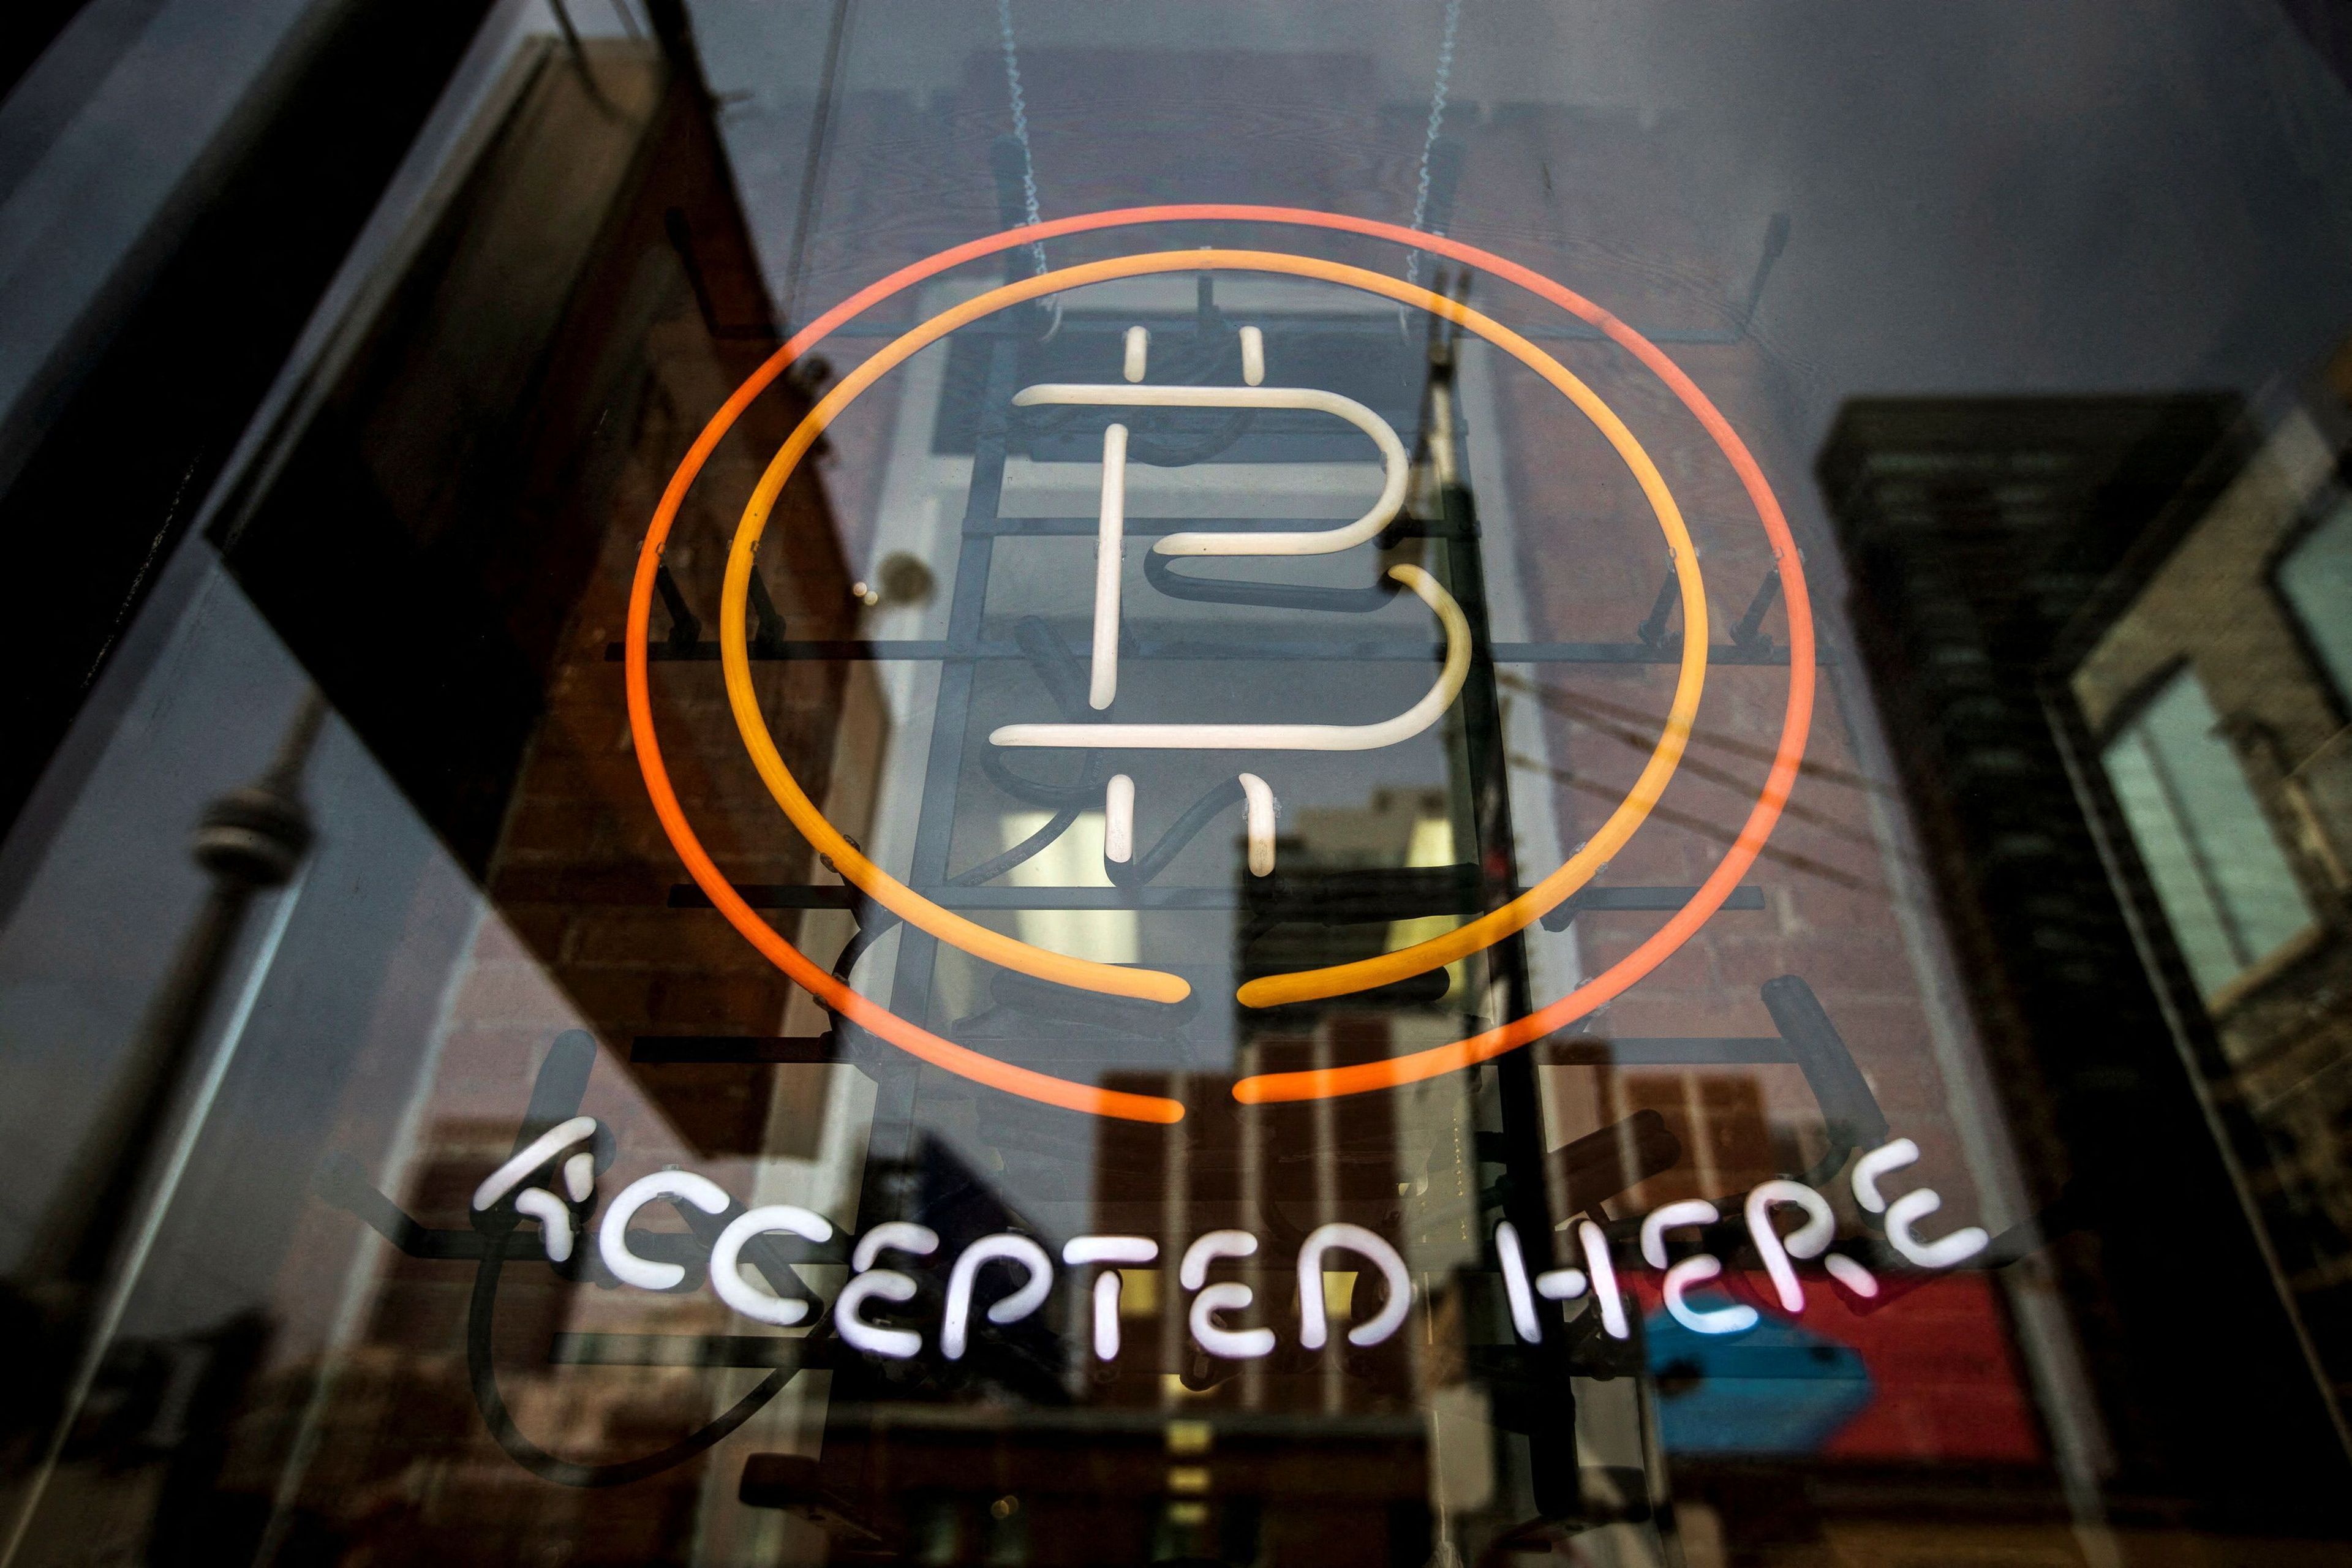 Un anuncio luminoso en una tienda, indicando que aceptan bitcoin.